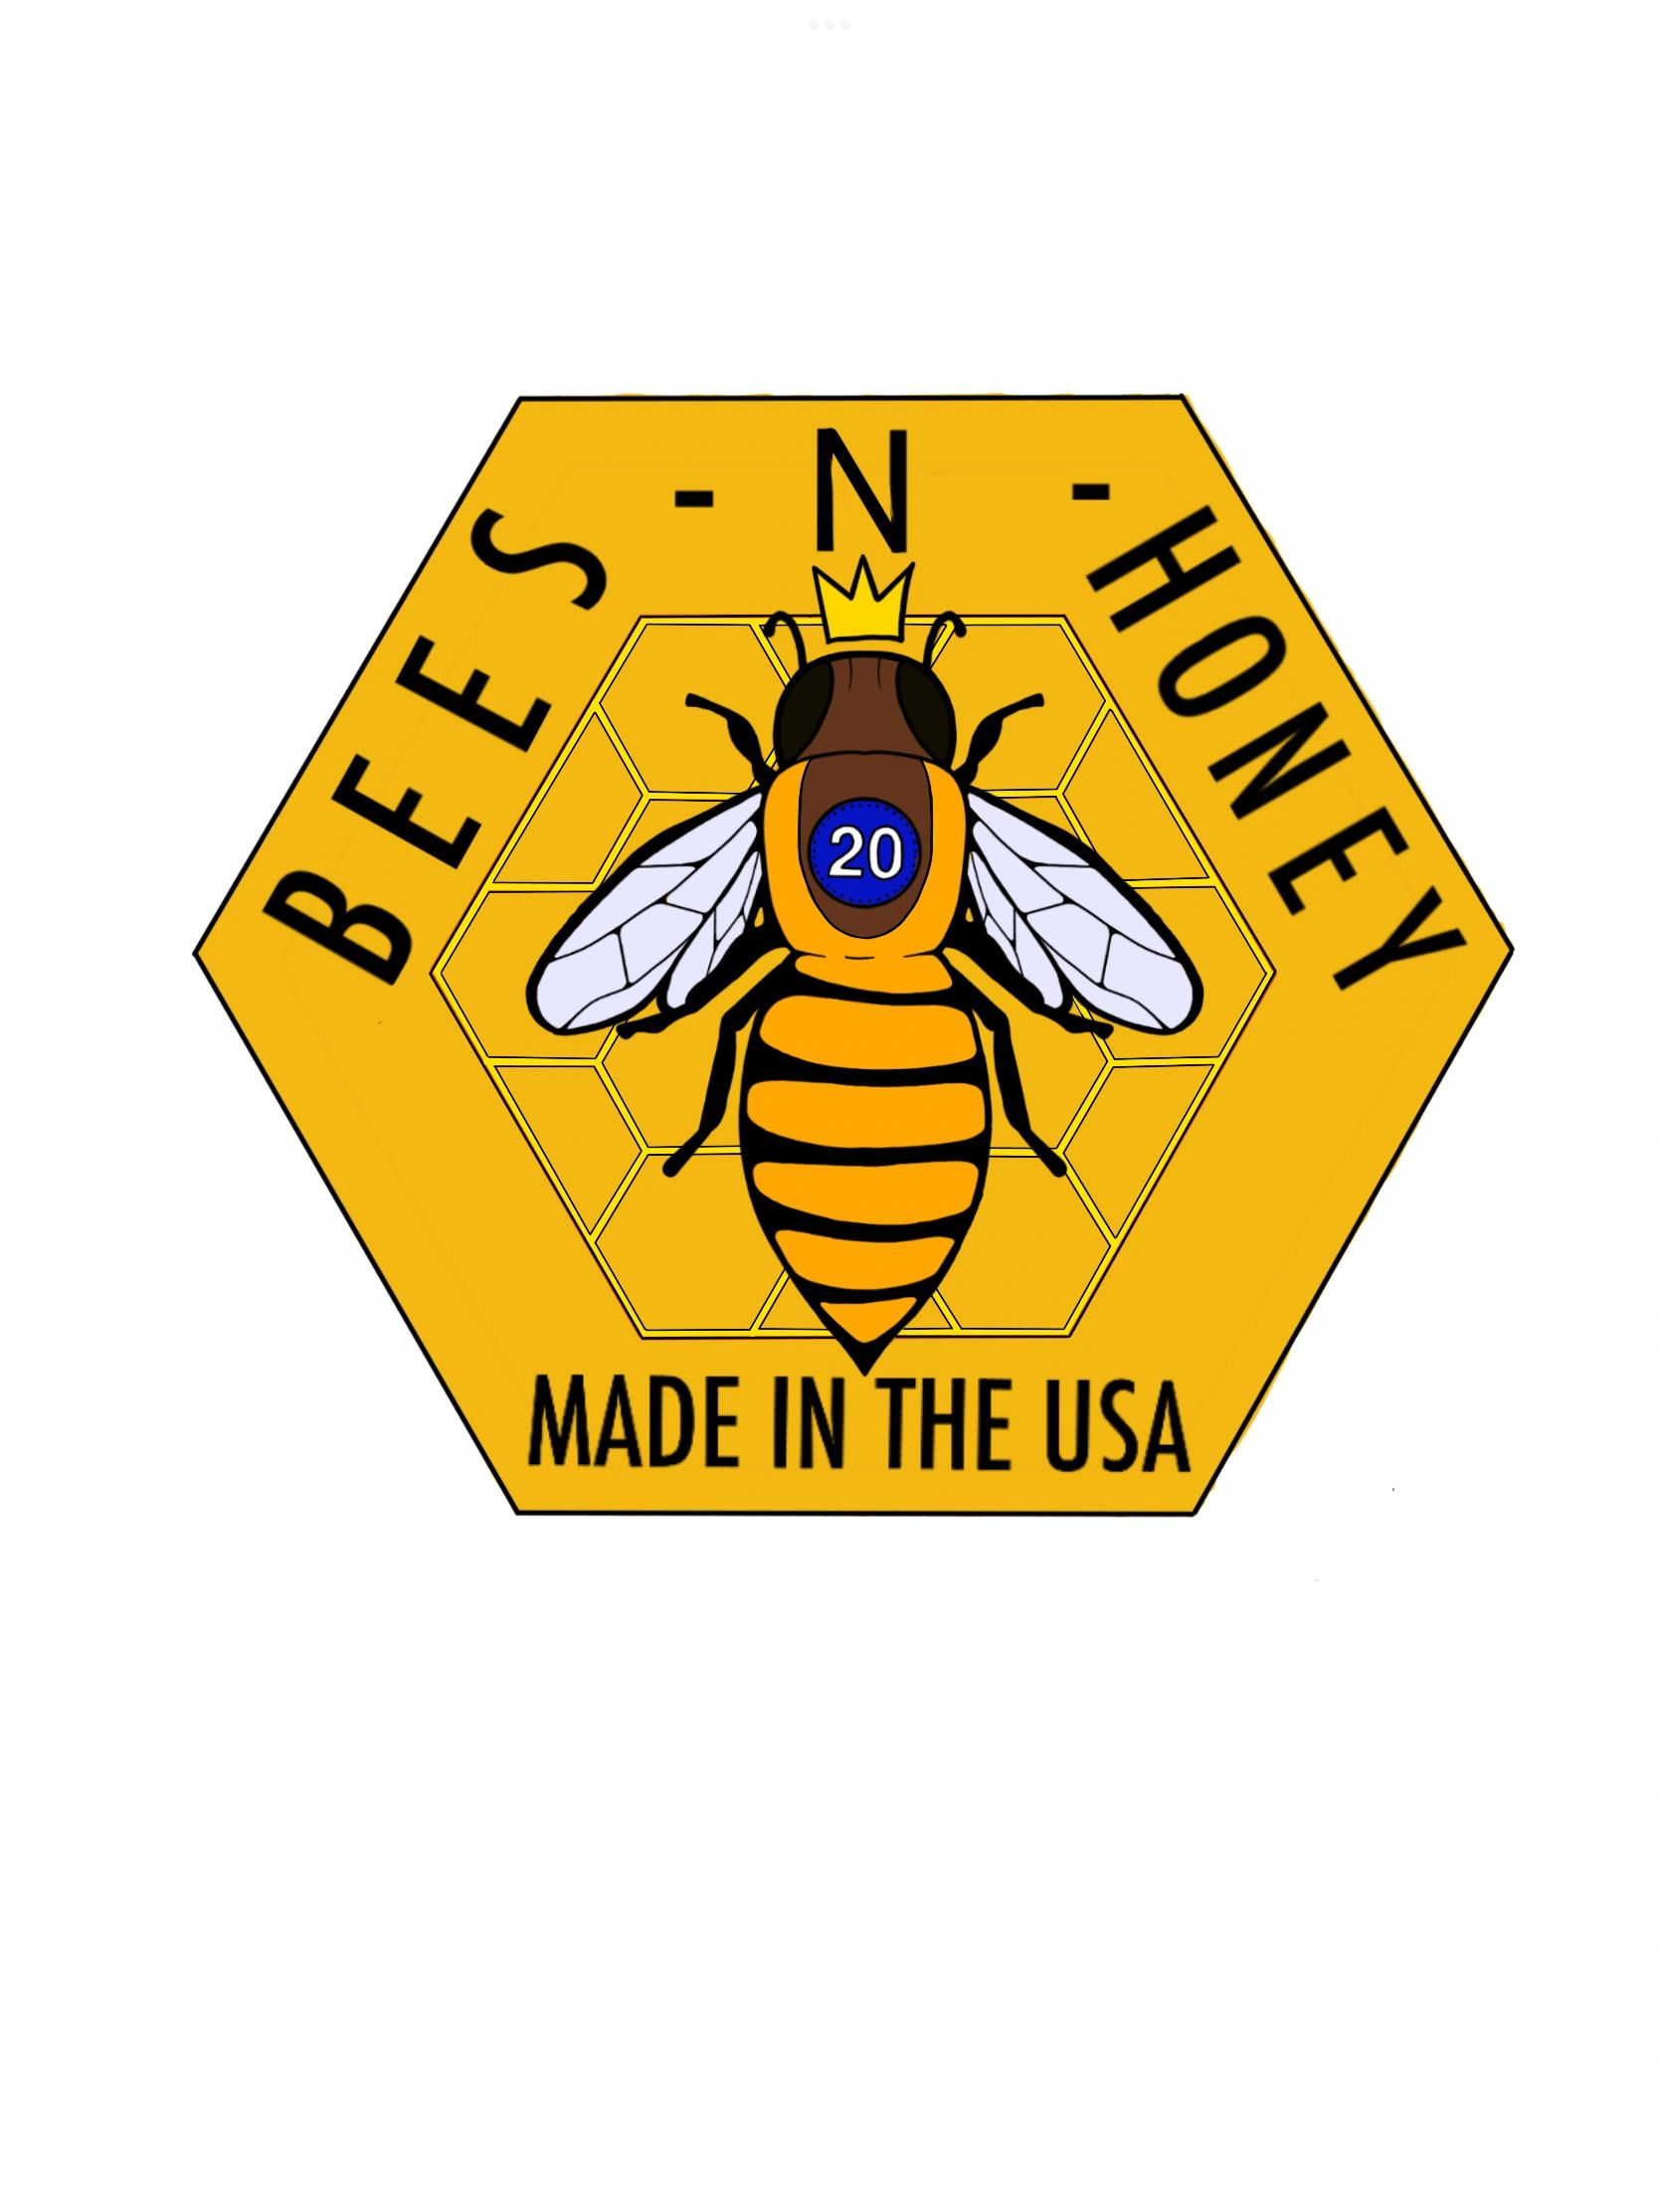 Bees-N-Honey - Bees, Honeybee, Honey, Bees